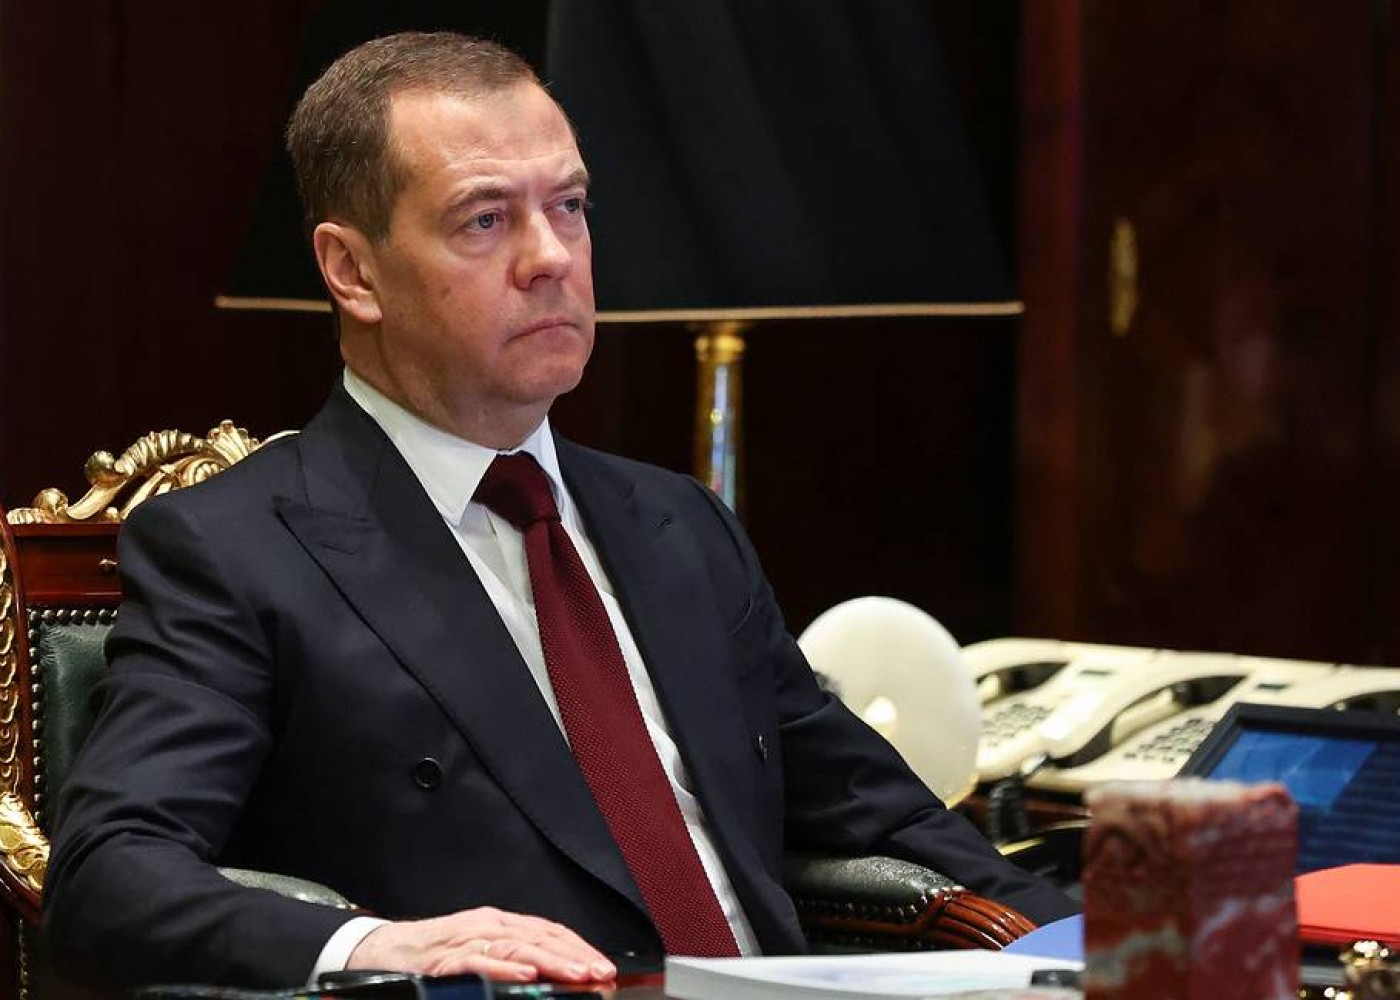 "Zelenski tarixə "qanlı təlxək" kimi düşəcək" -Medvedev